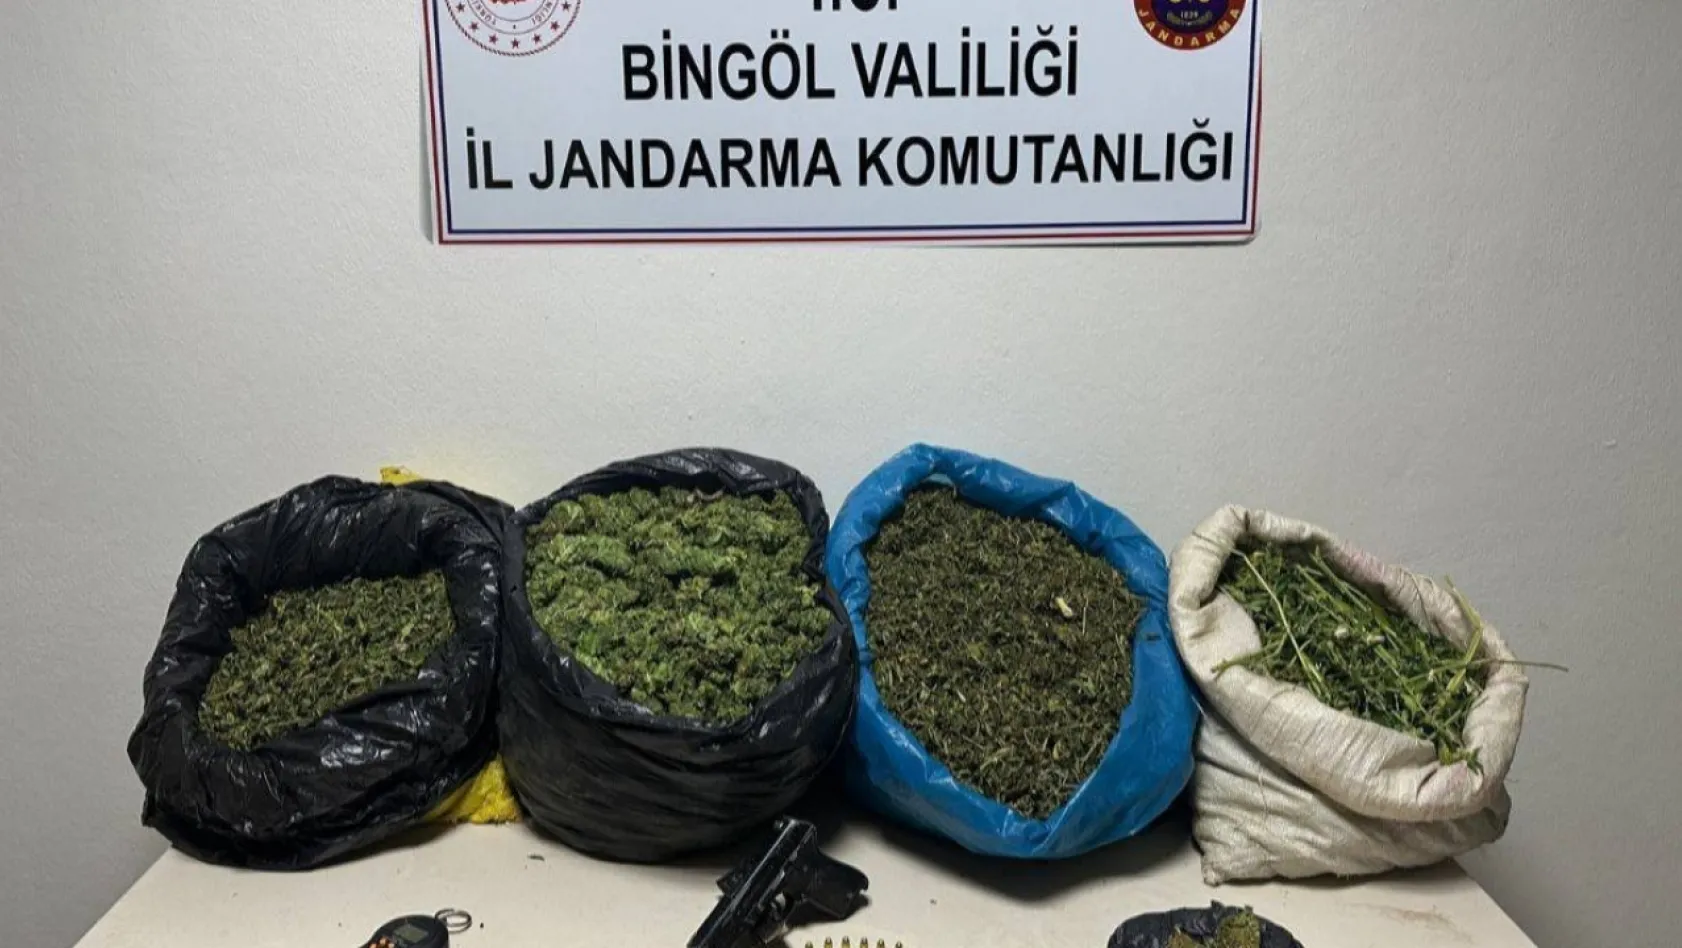 Bingöl'de uyuşturucu ile mücadele